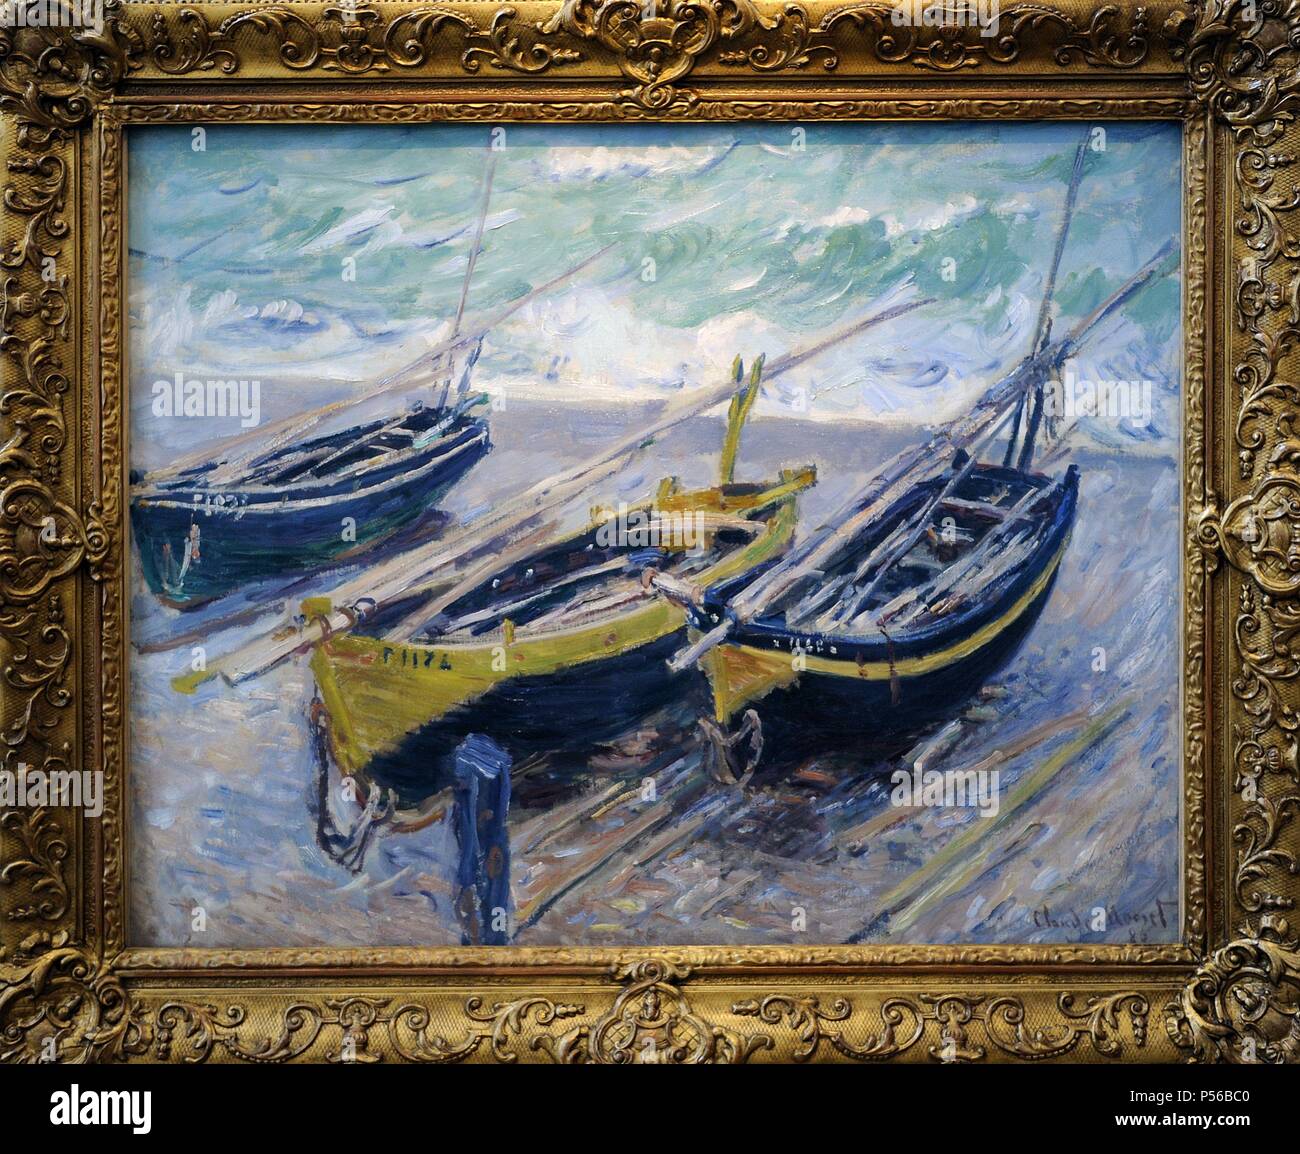 Claude Monet (1906-1957). Peintre français, fondateur de la peinture impressionniste français. Trois bateaux de pêche, 1886. Huile sur toile. Musée des beaux-arts de Budapest. La Hongrie. Banque D'Images